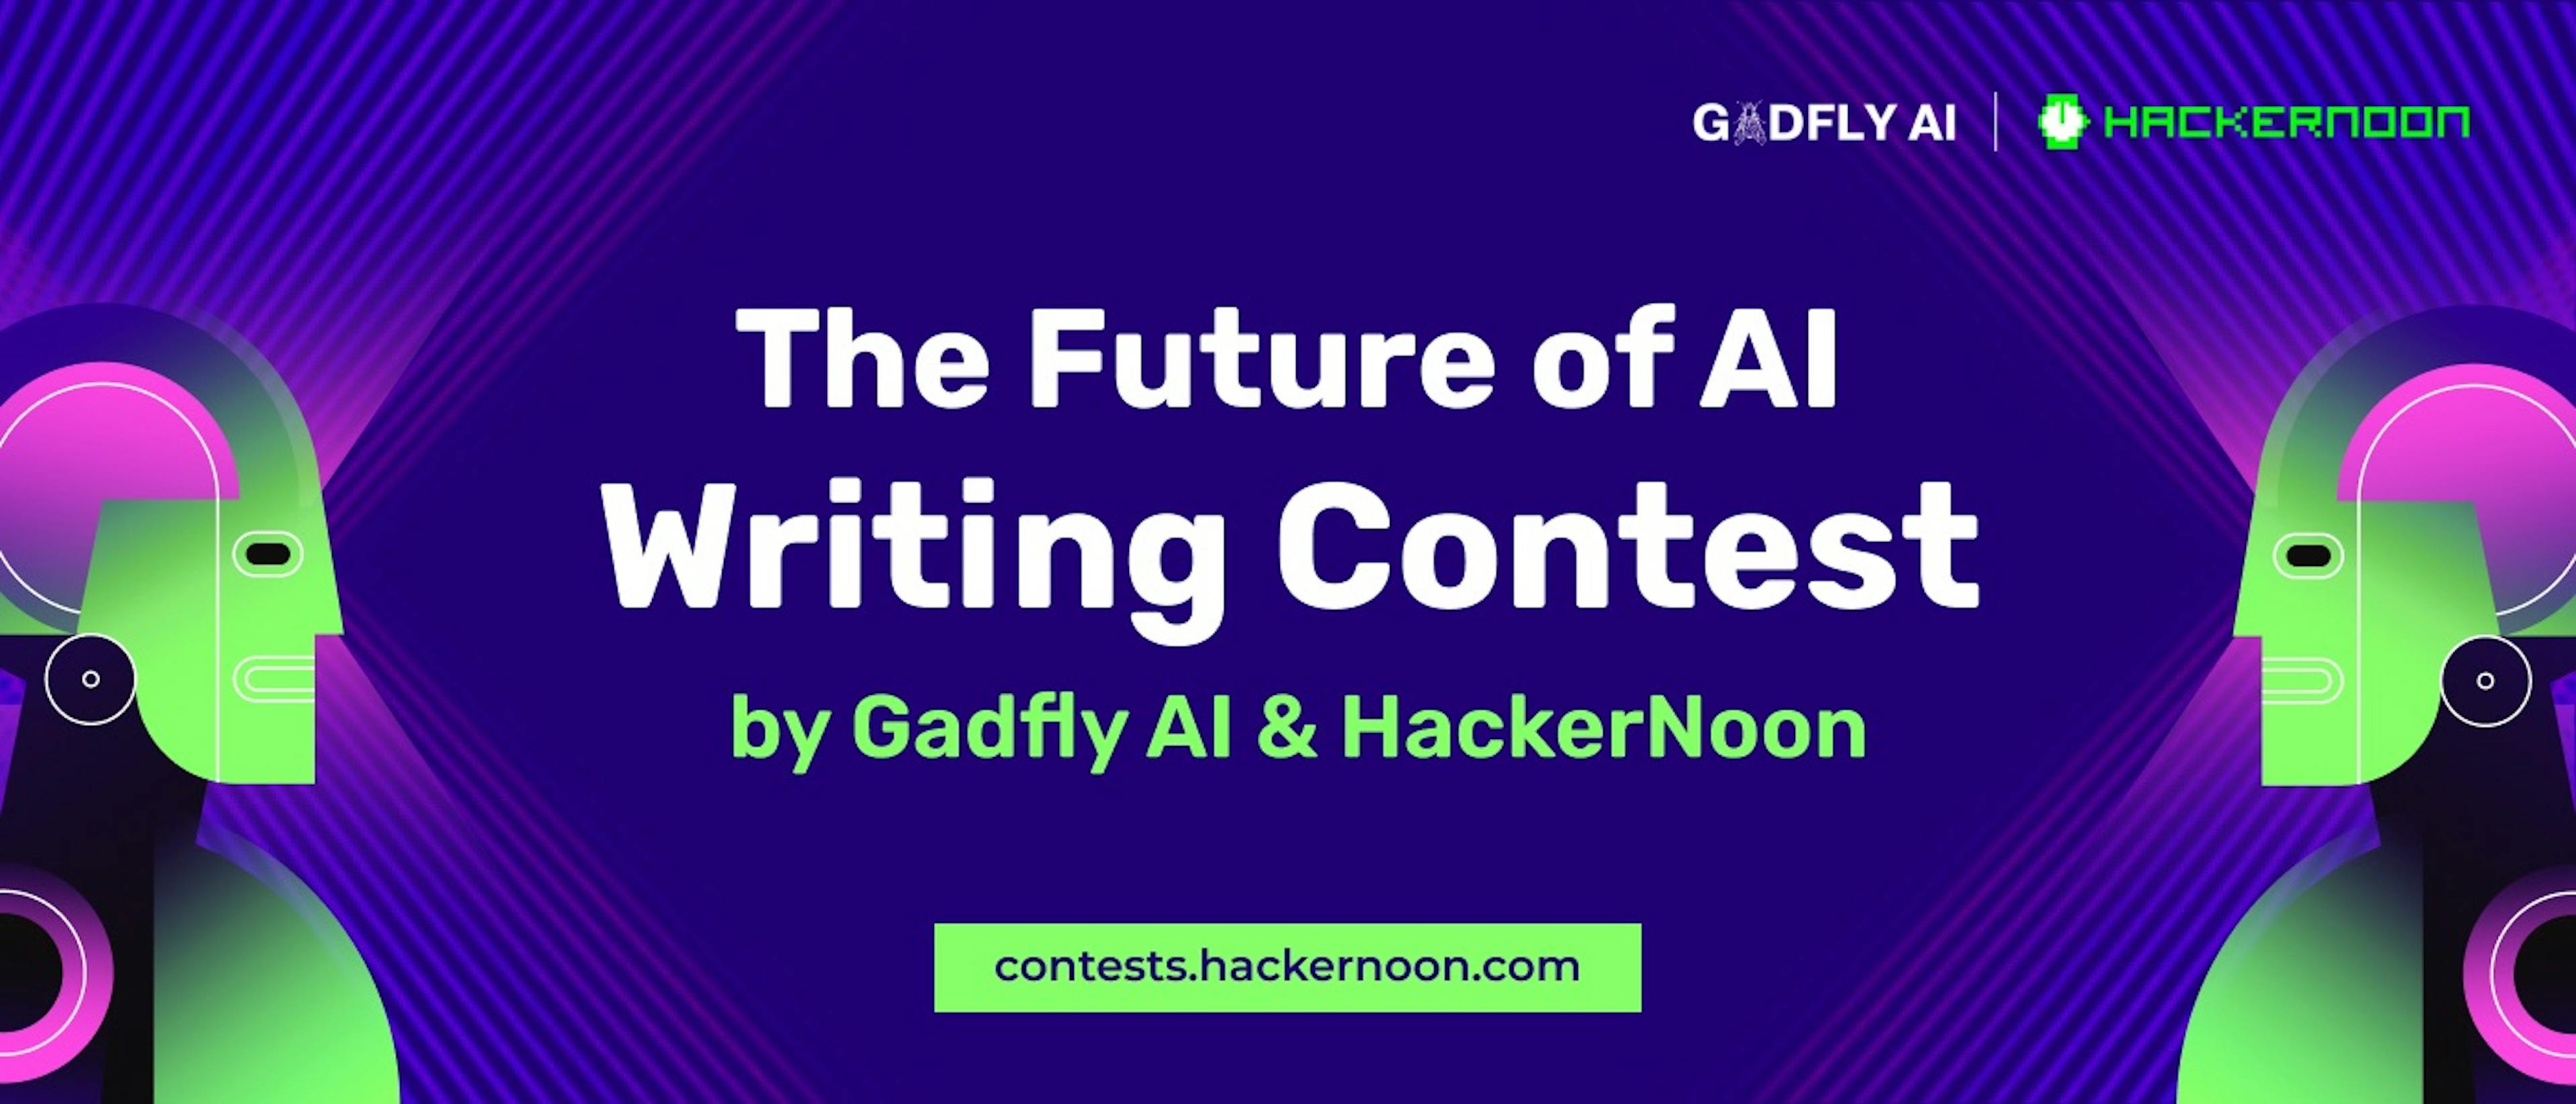 featured image - Cuộc thi viết về tương lai của AI của GadflyAI: Người chiến thắng được công bố!